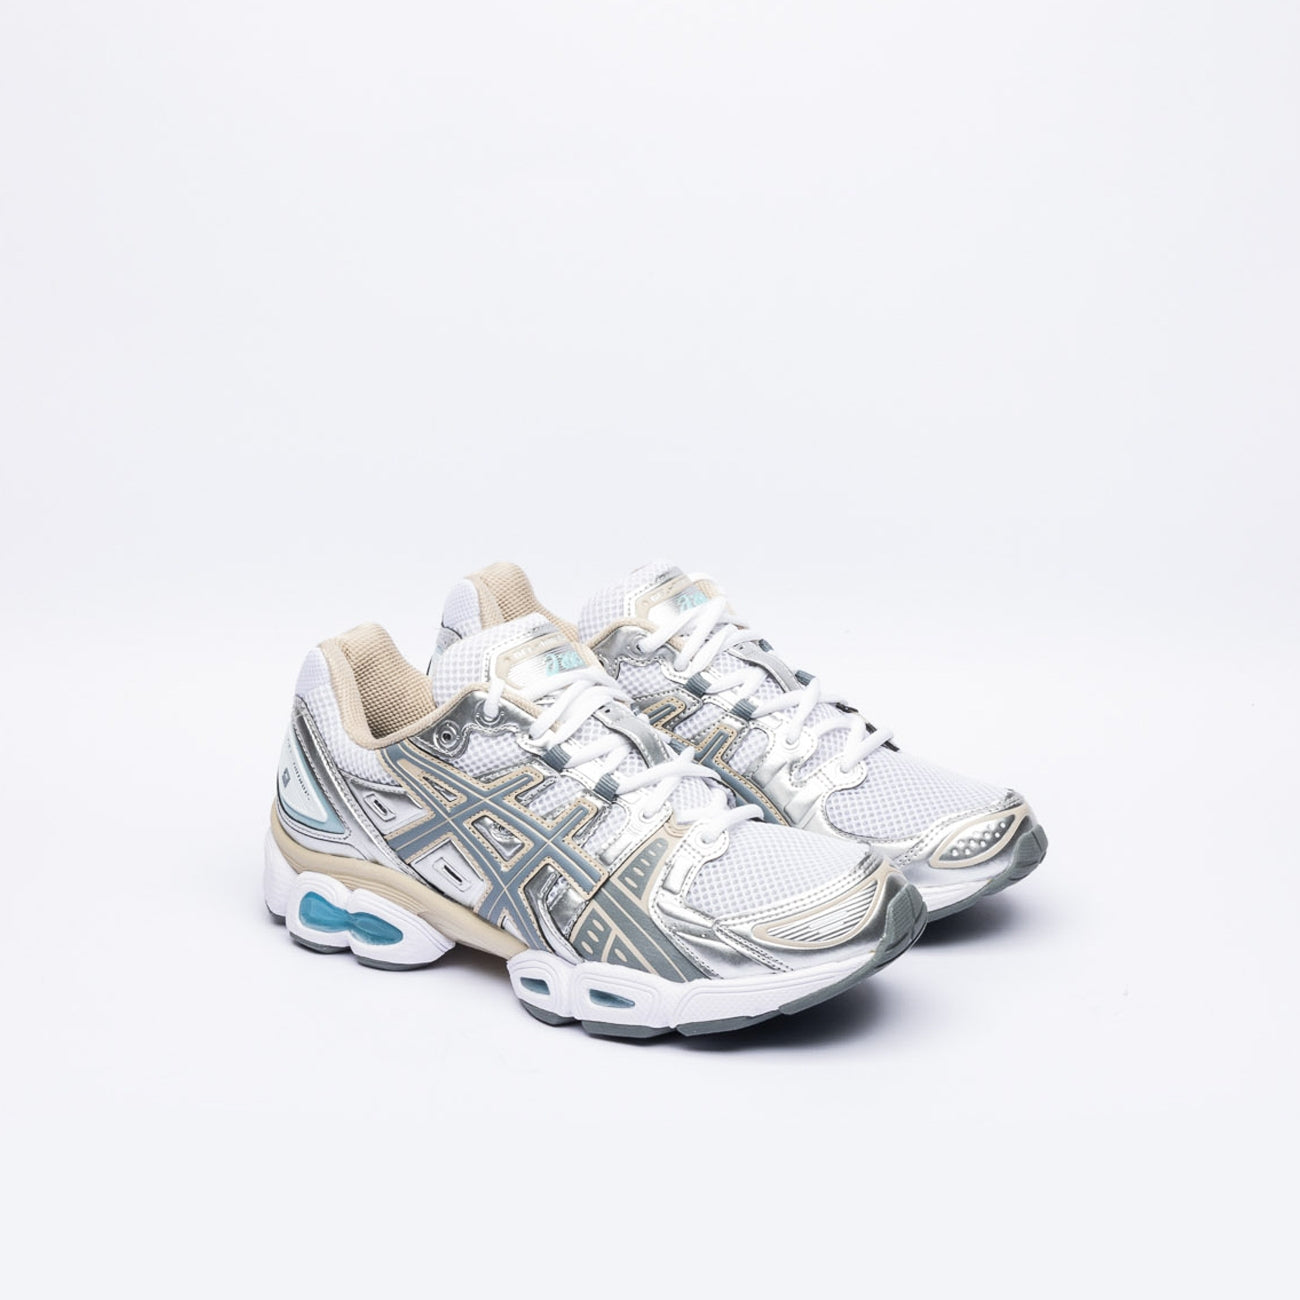 Sneaker running Asics Gel-Nimbus 9 in pelle argento e tessuto bianco